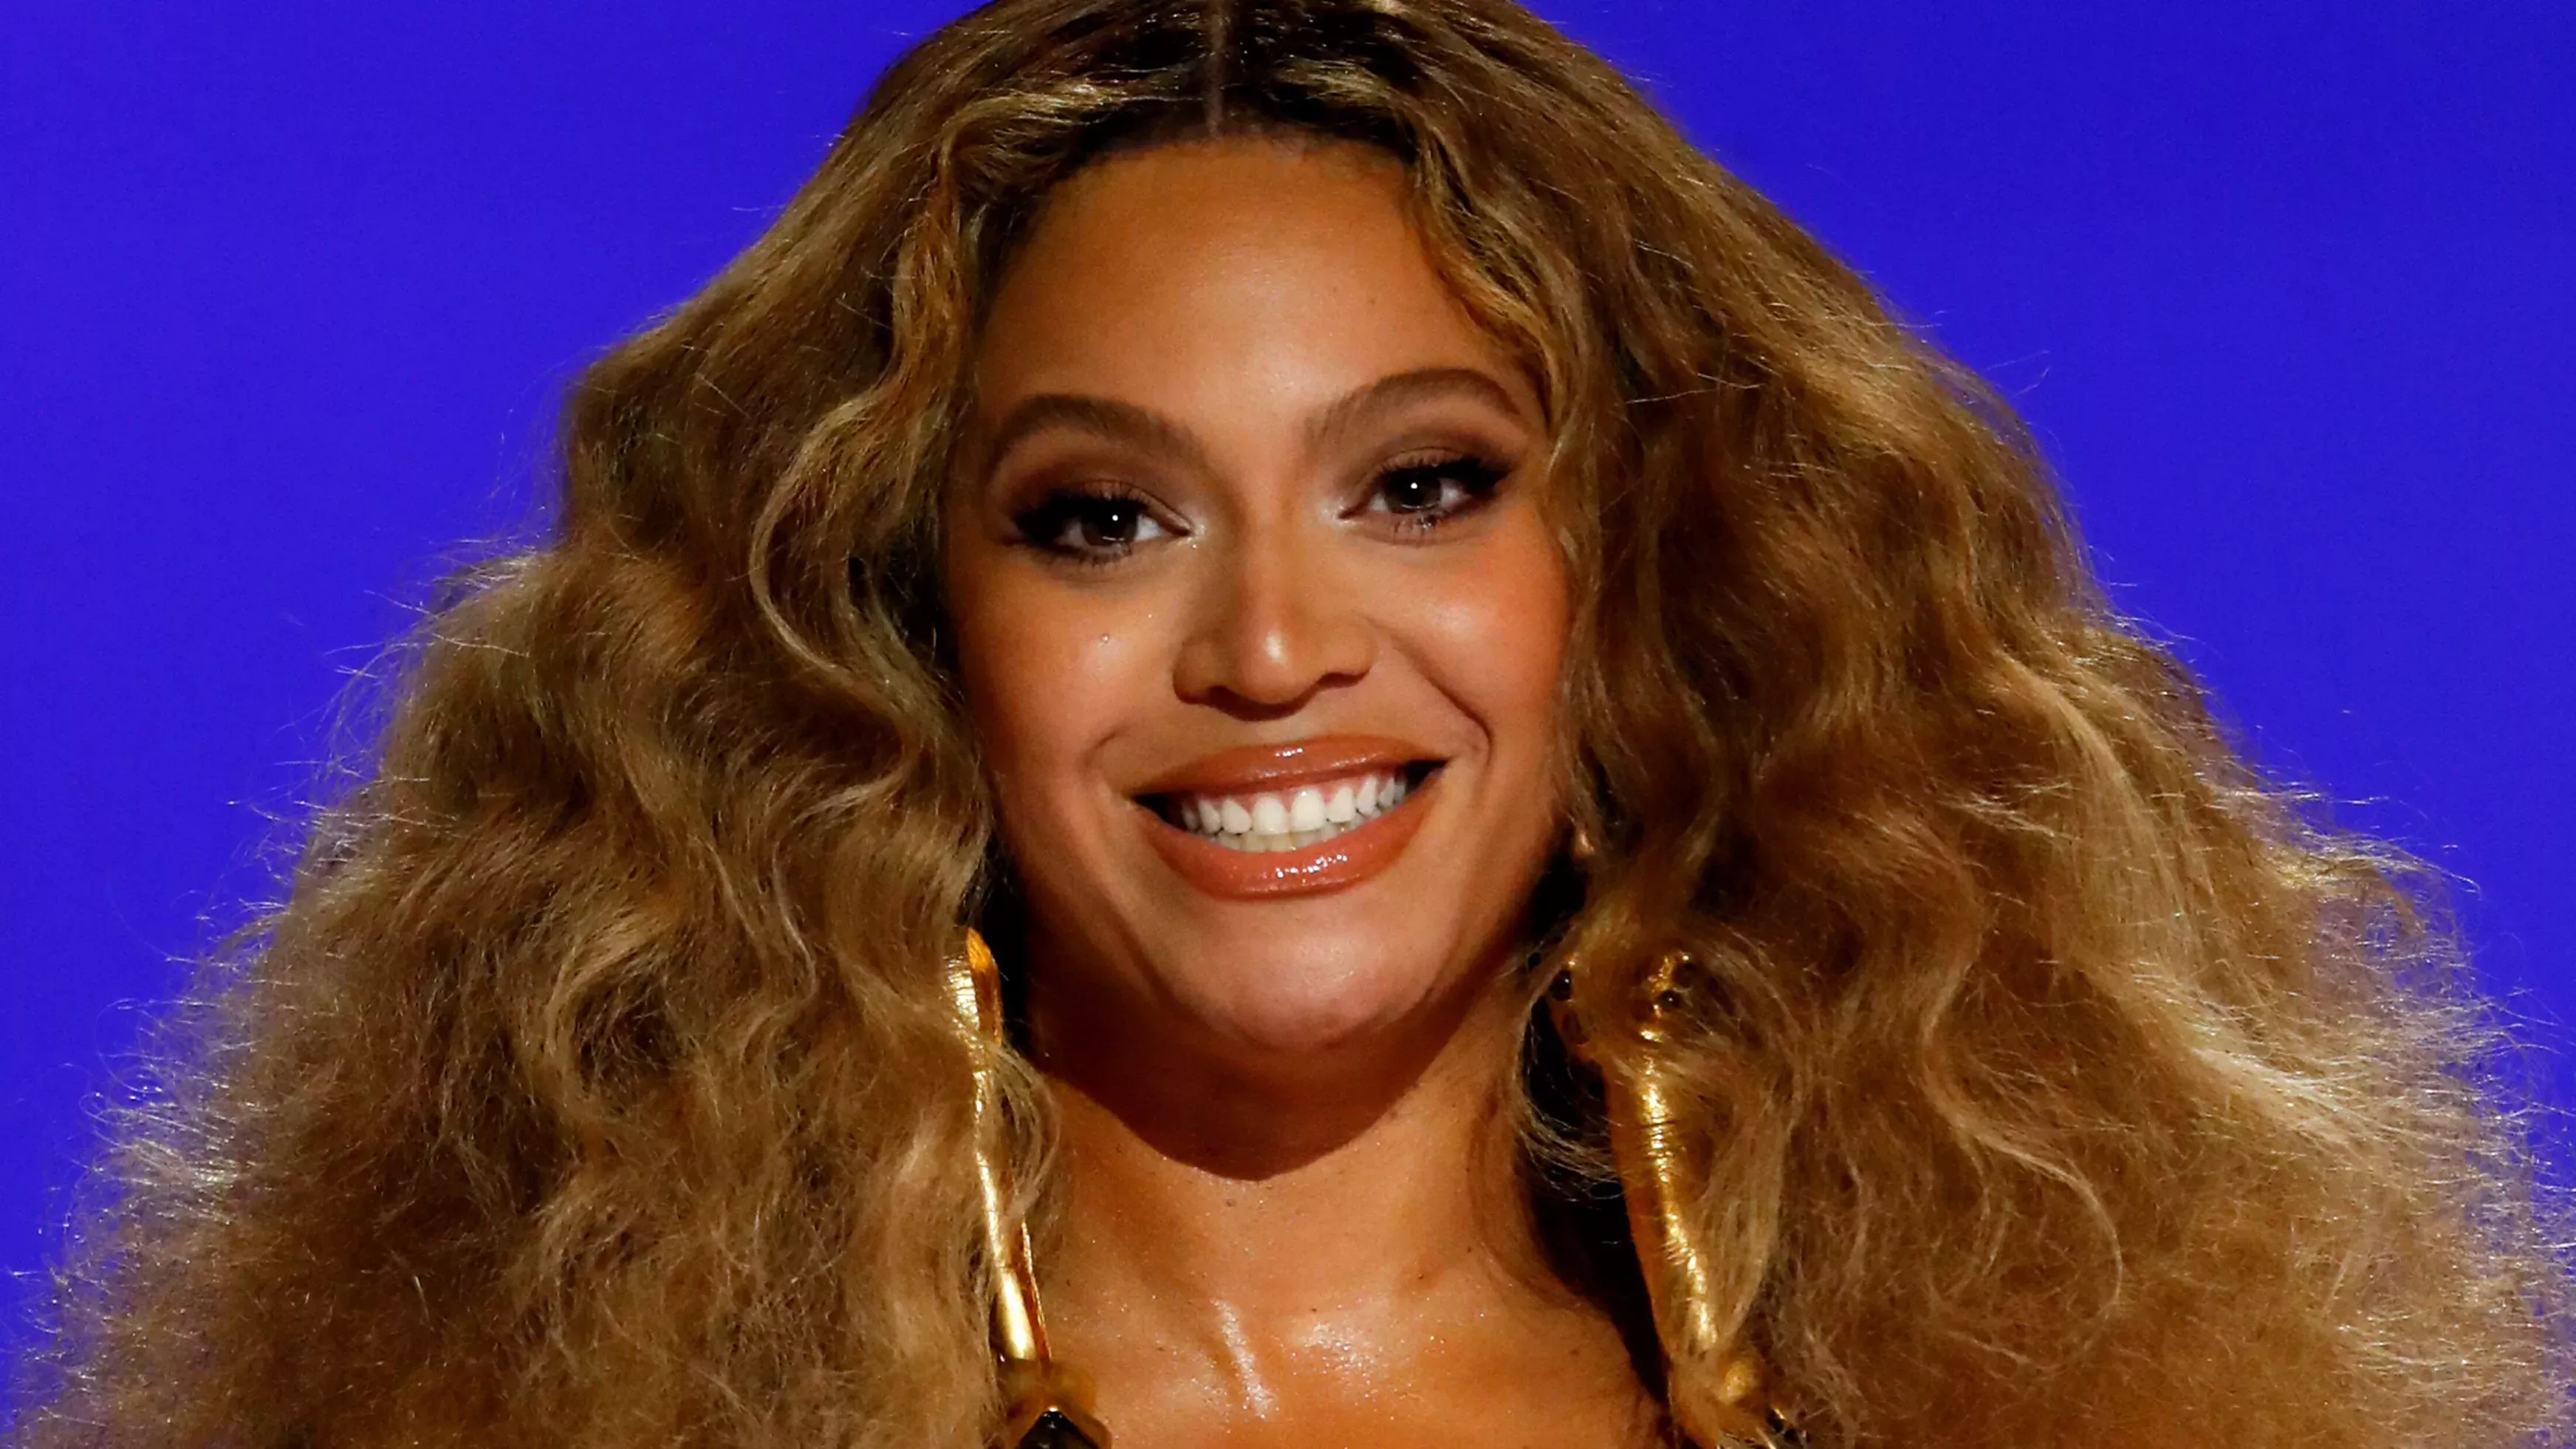 Internet opina sobre el flequillo de Beyoncé en la portada de British Vogue